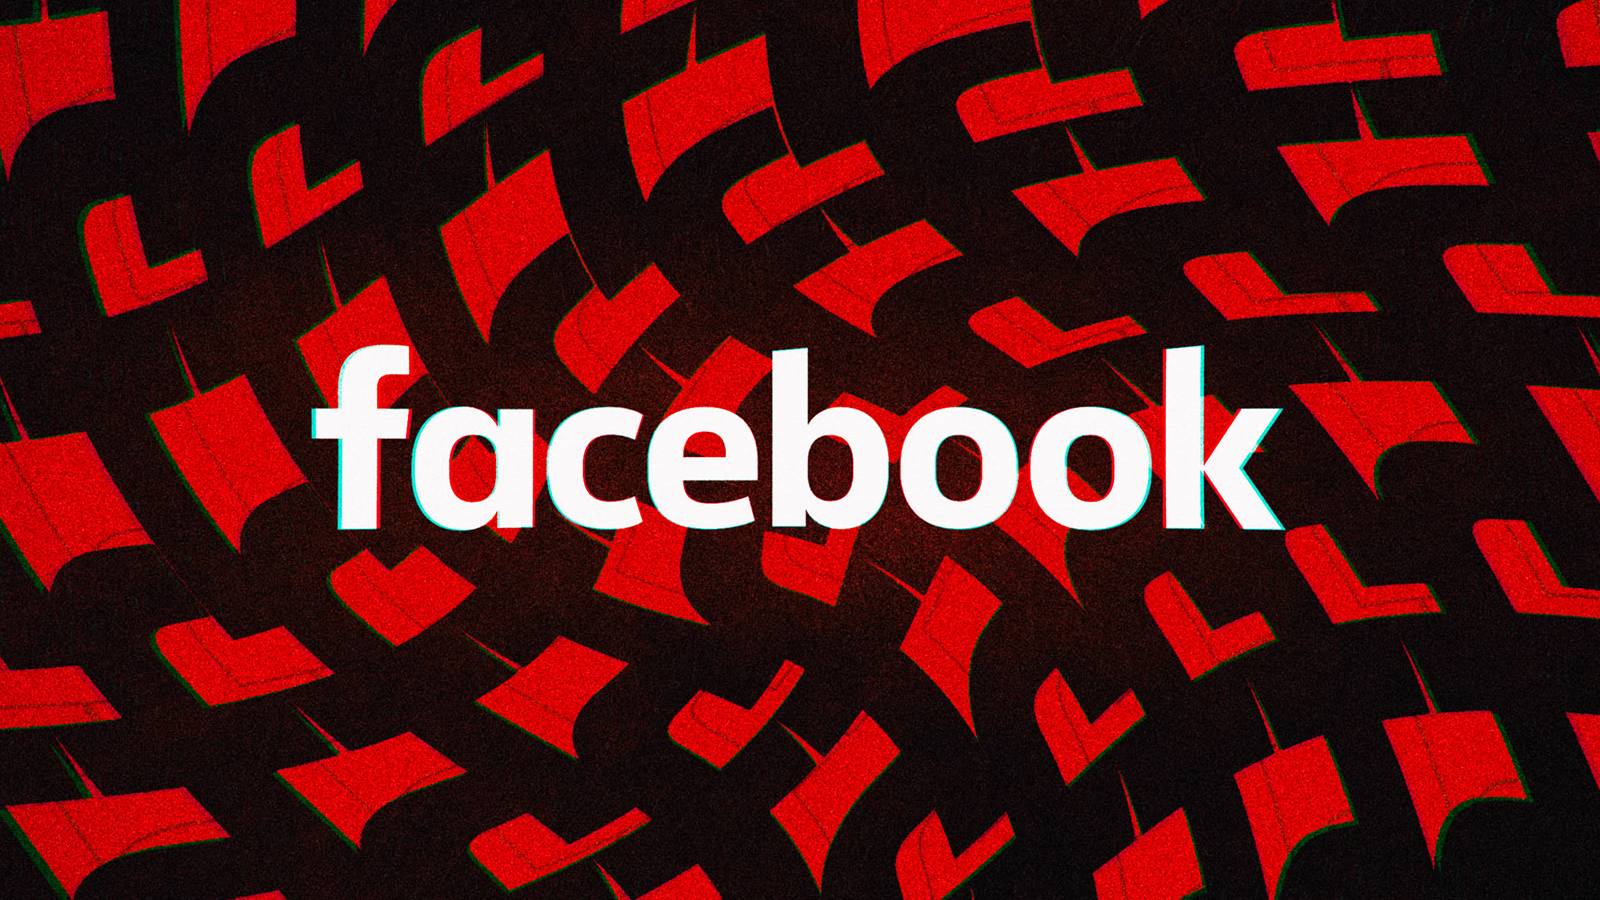 Facebook: il nuovo aggiornamento per i cellulari